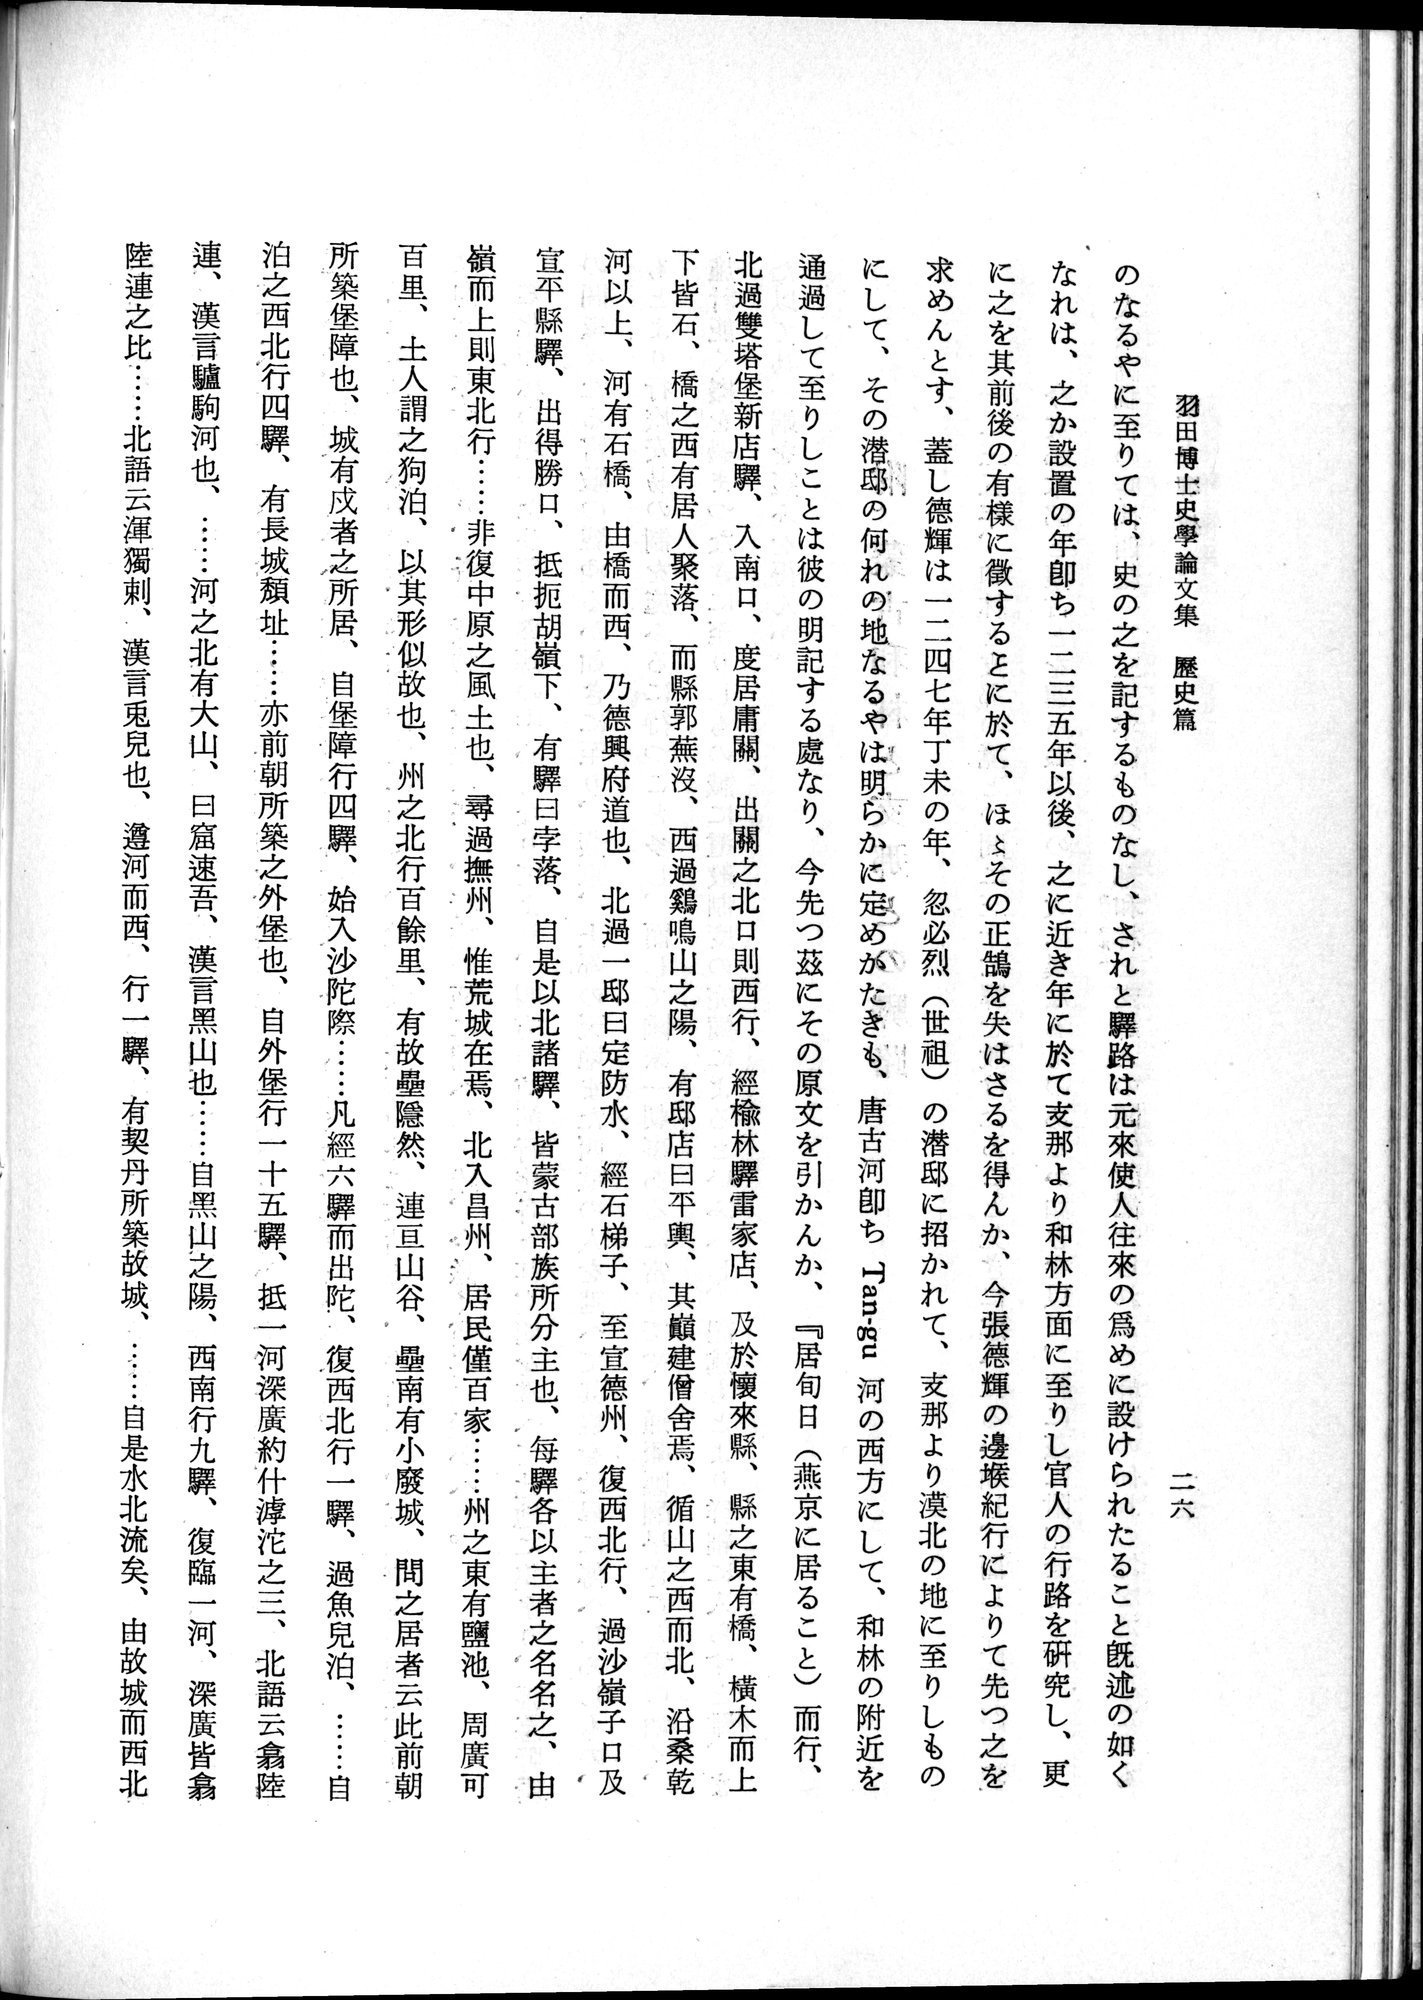 羽田博士史学論文集 : vol.1 / 64 ページ（白黒高解像度画像）